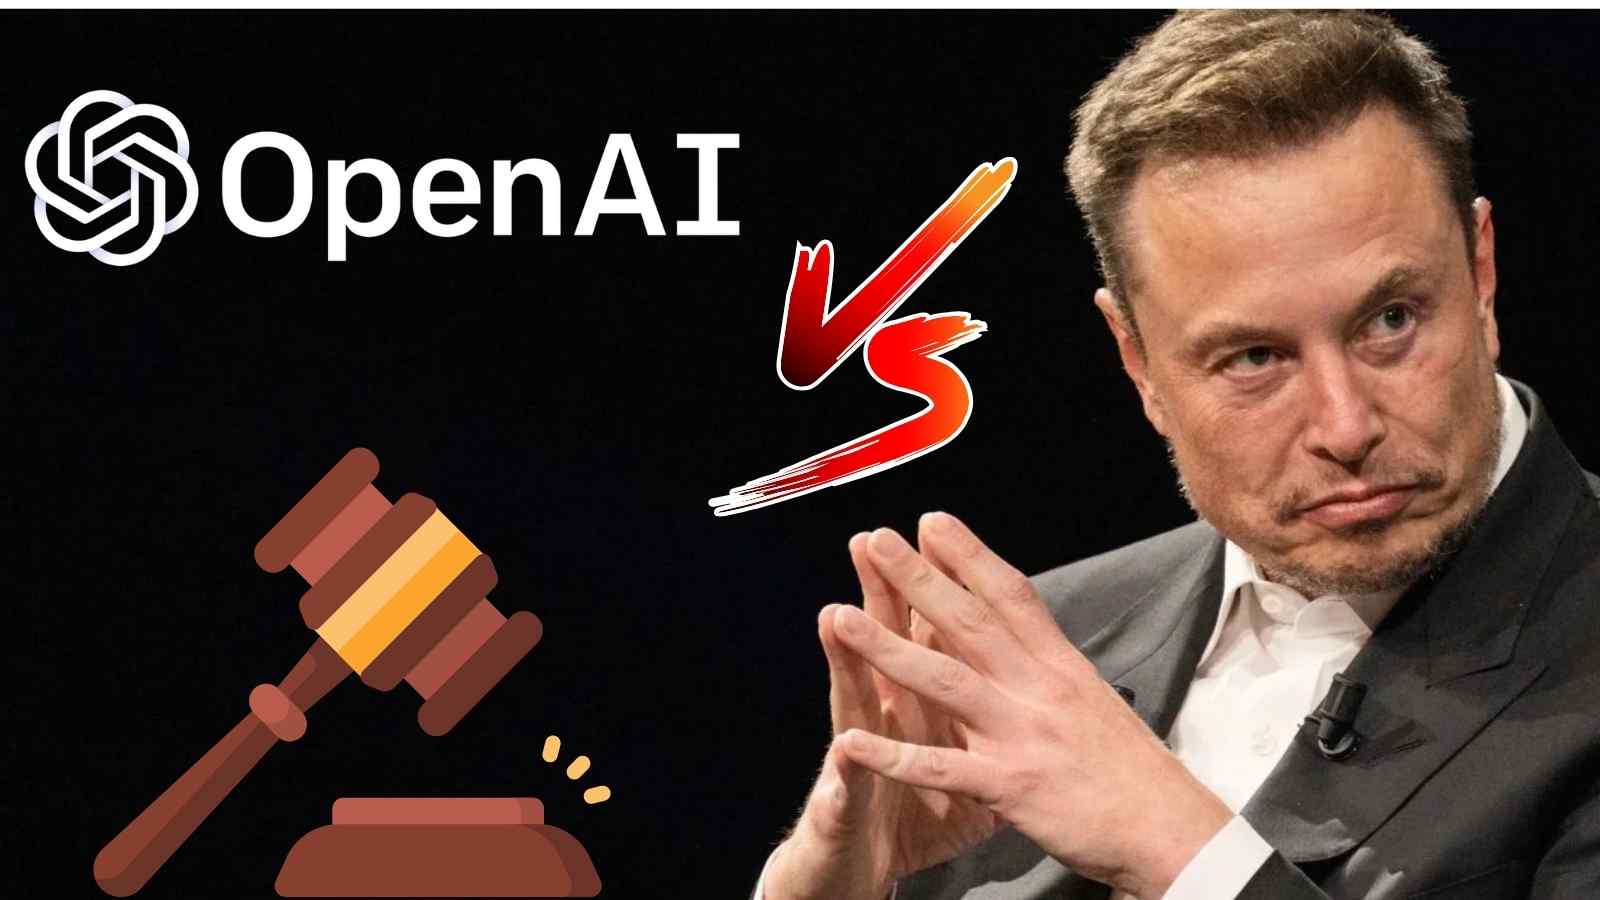 Elon Musk ci ripensa e a poco prima dell'udienza per la causa contro OpenAI ritira tutto, lasciando uno spiraglio di ripresa.